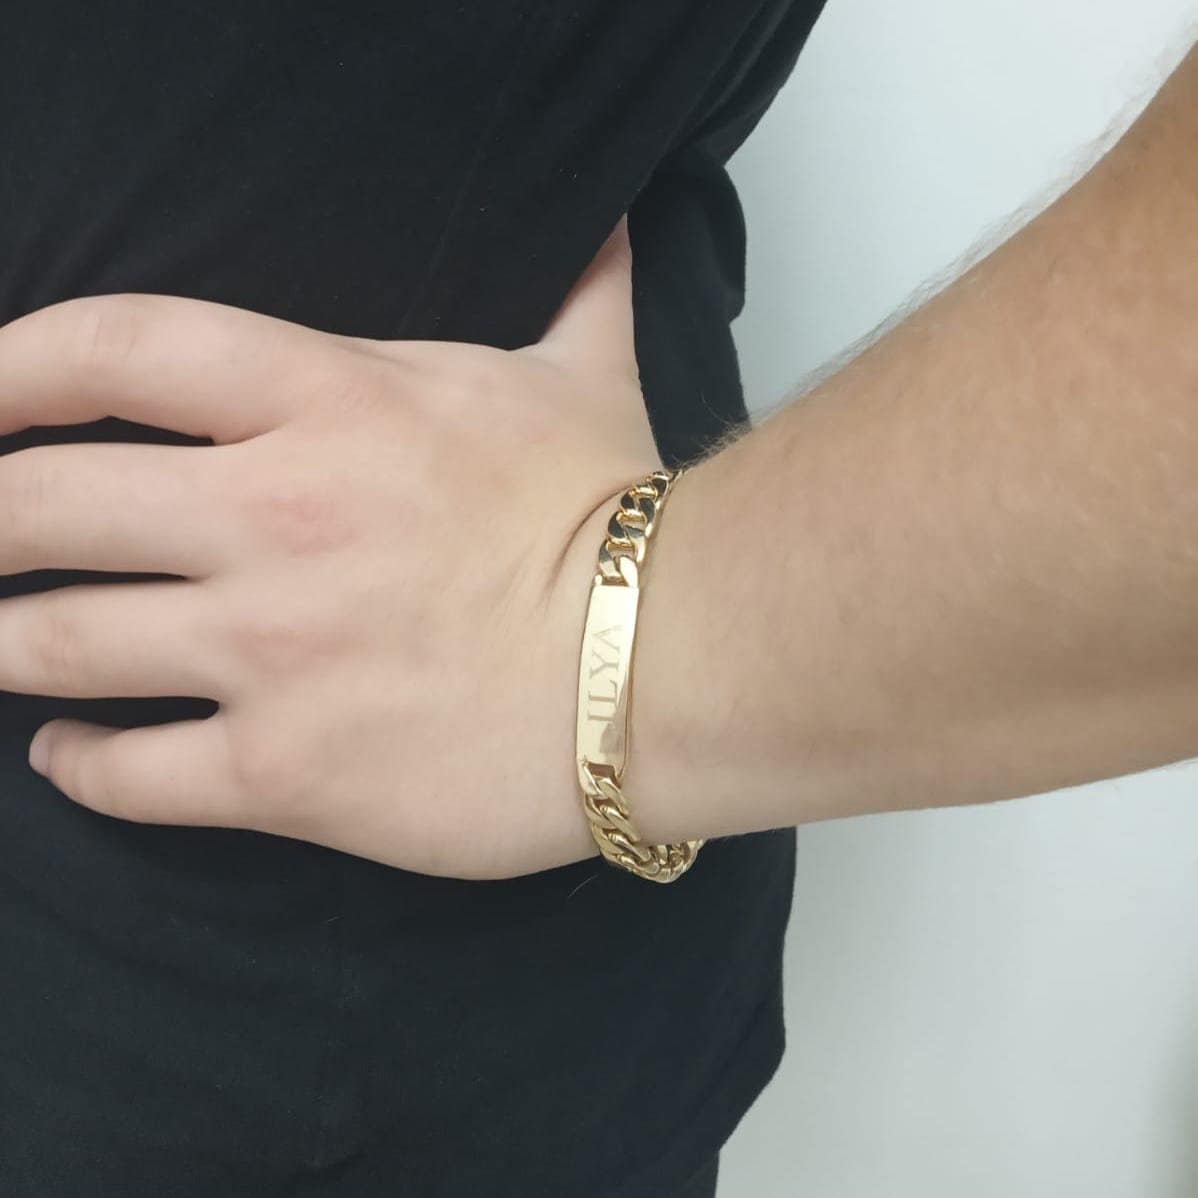 Personalized Men's Id Bracelet 18K Gold Plated Engraved Name Bracelet Gift  for Men Monogram Initial Personalized Gift Curb Link ID Bracelet 